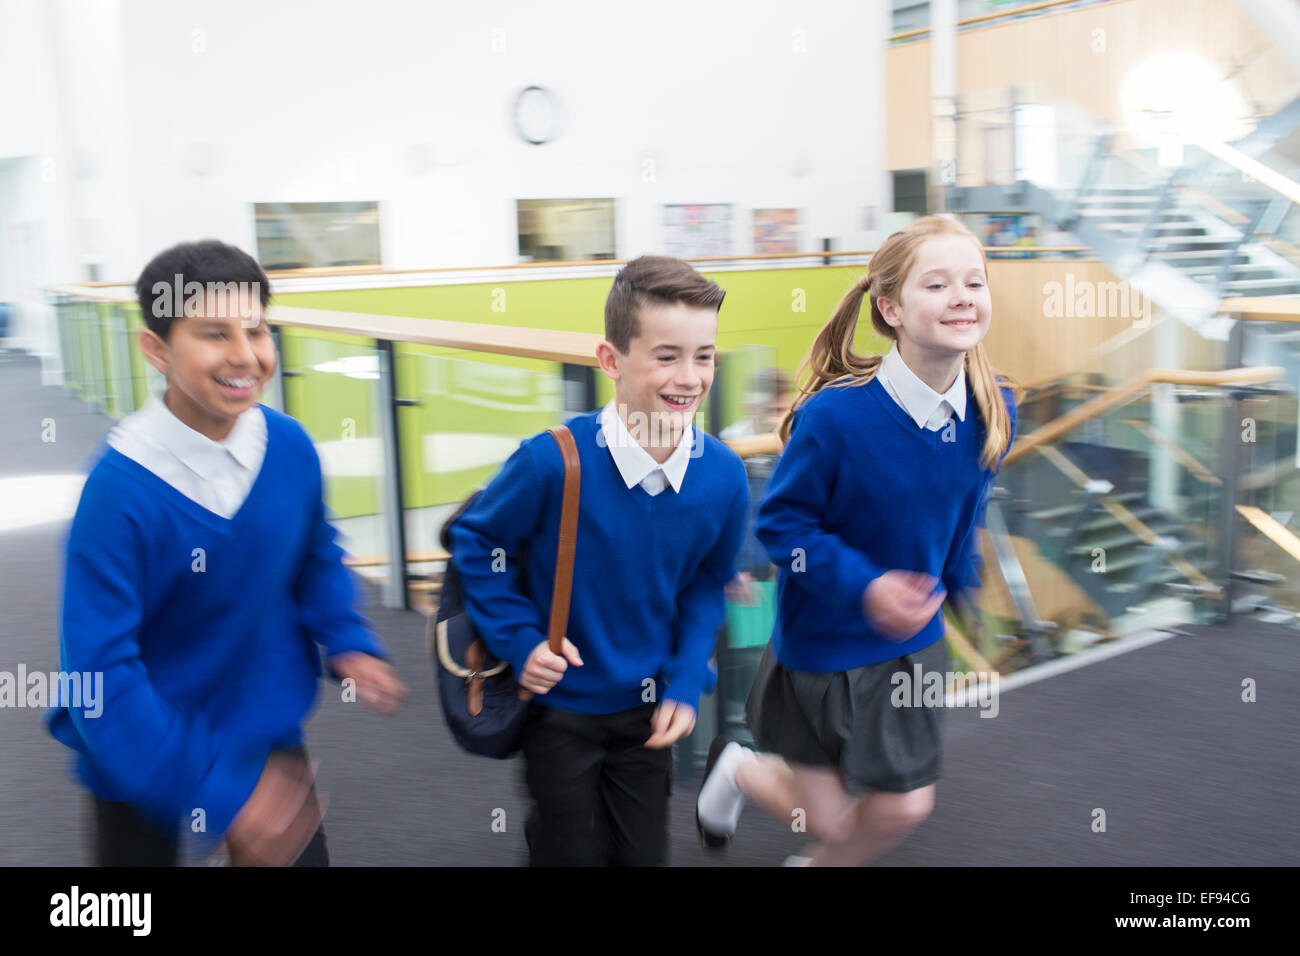 Happy pupils wearing school uniforms running in school corridor Stock ...